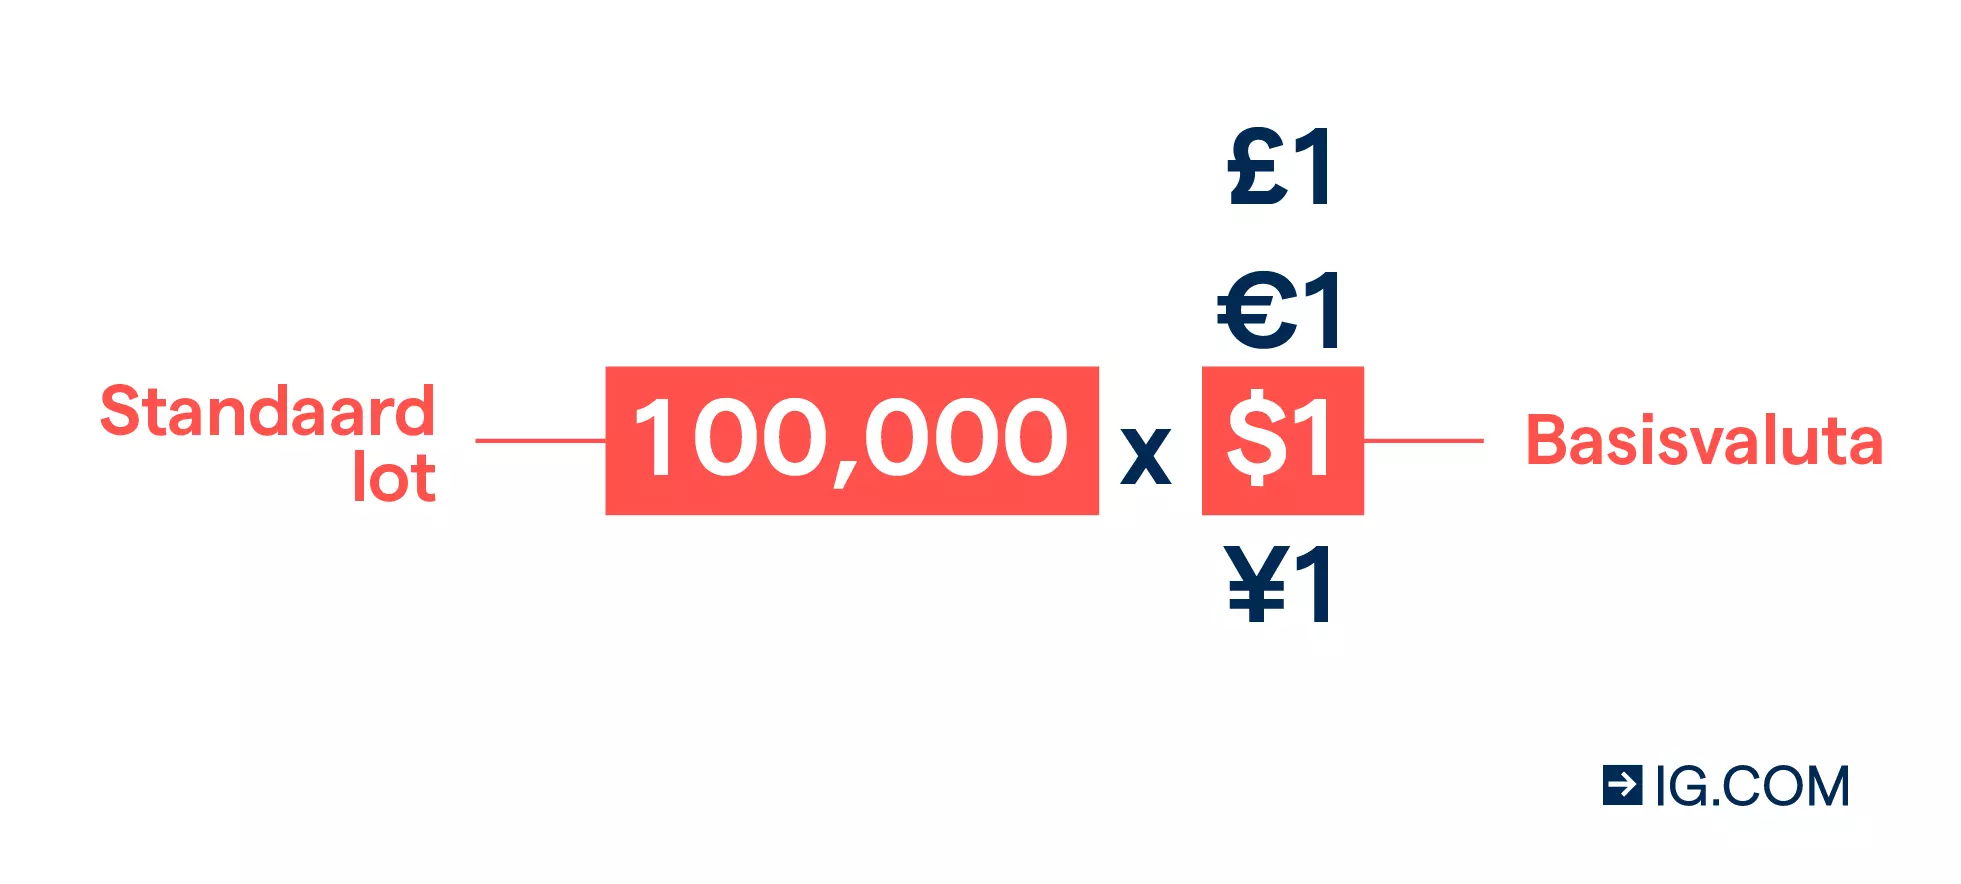 Valutahandel: een standaardlot is 100.000 eenheden van de basisvaluta